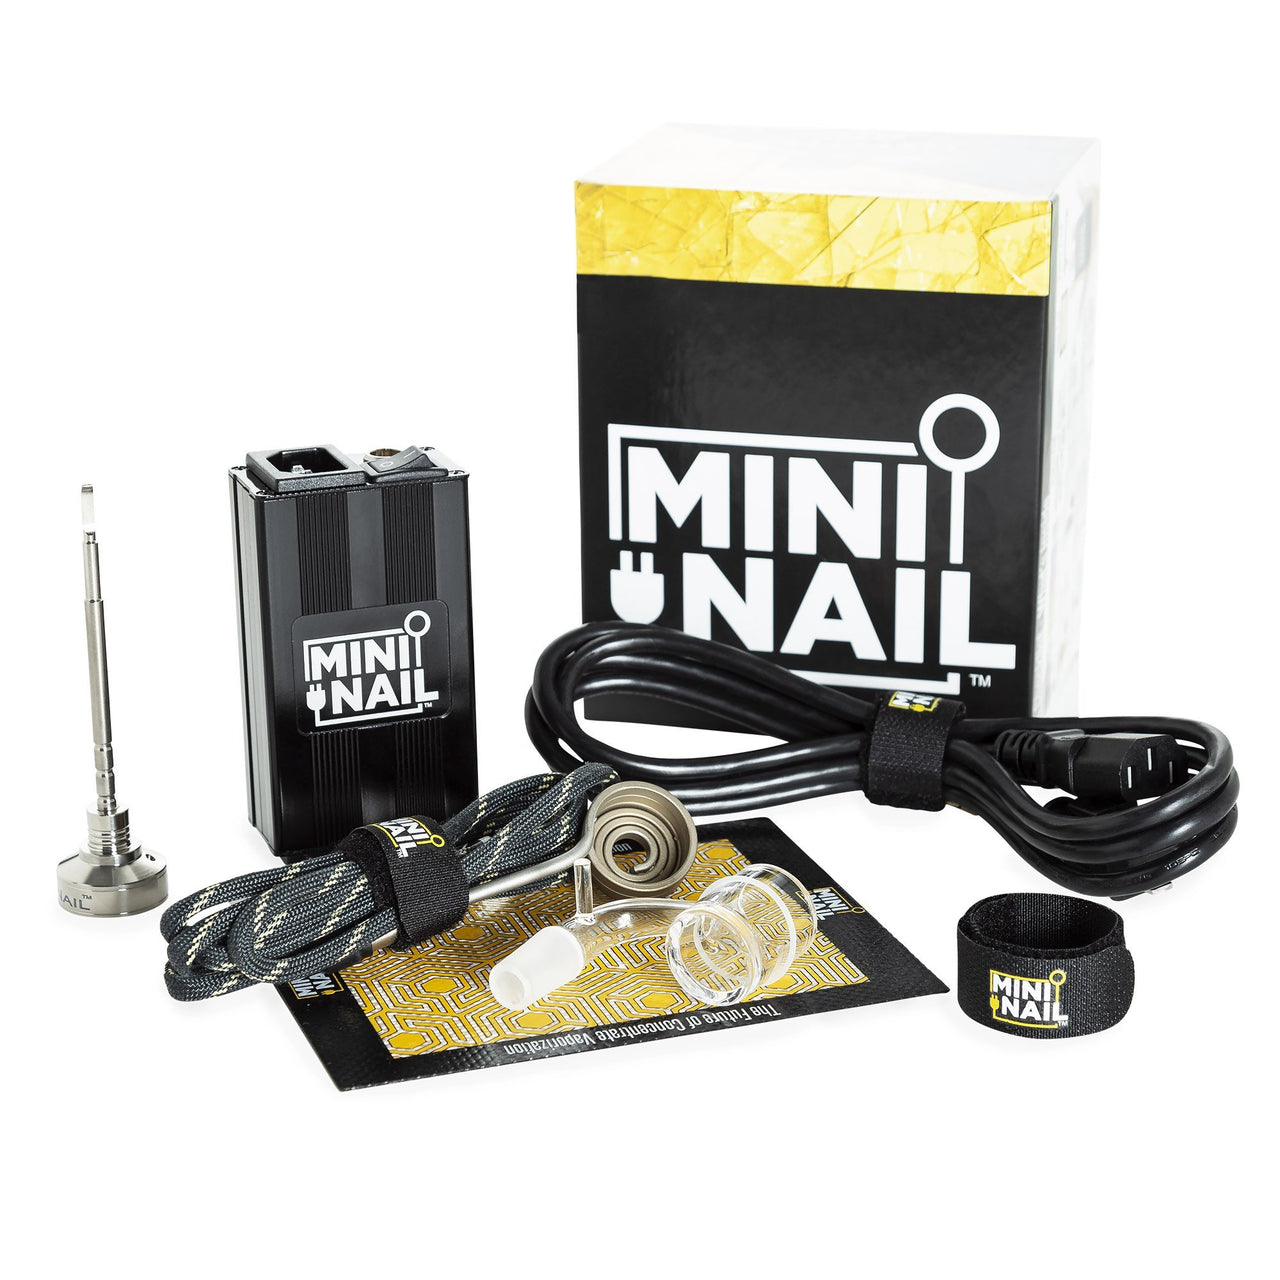 MiniNail Micro Enail Kit - Quartz Ebanger - 420 Science - The most trusted online smoke shop.